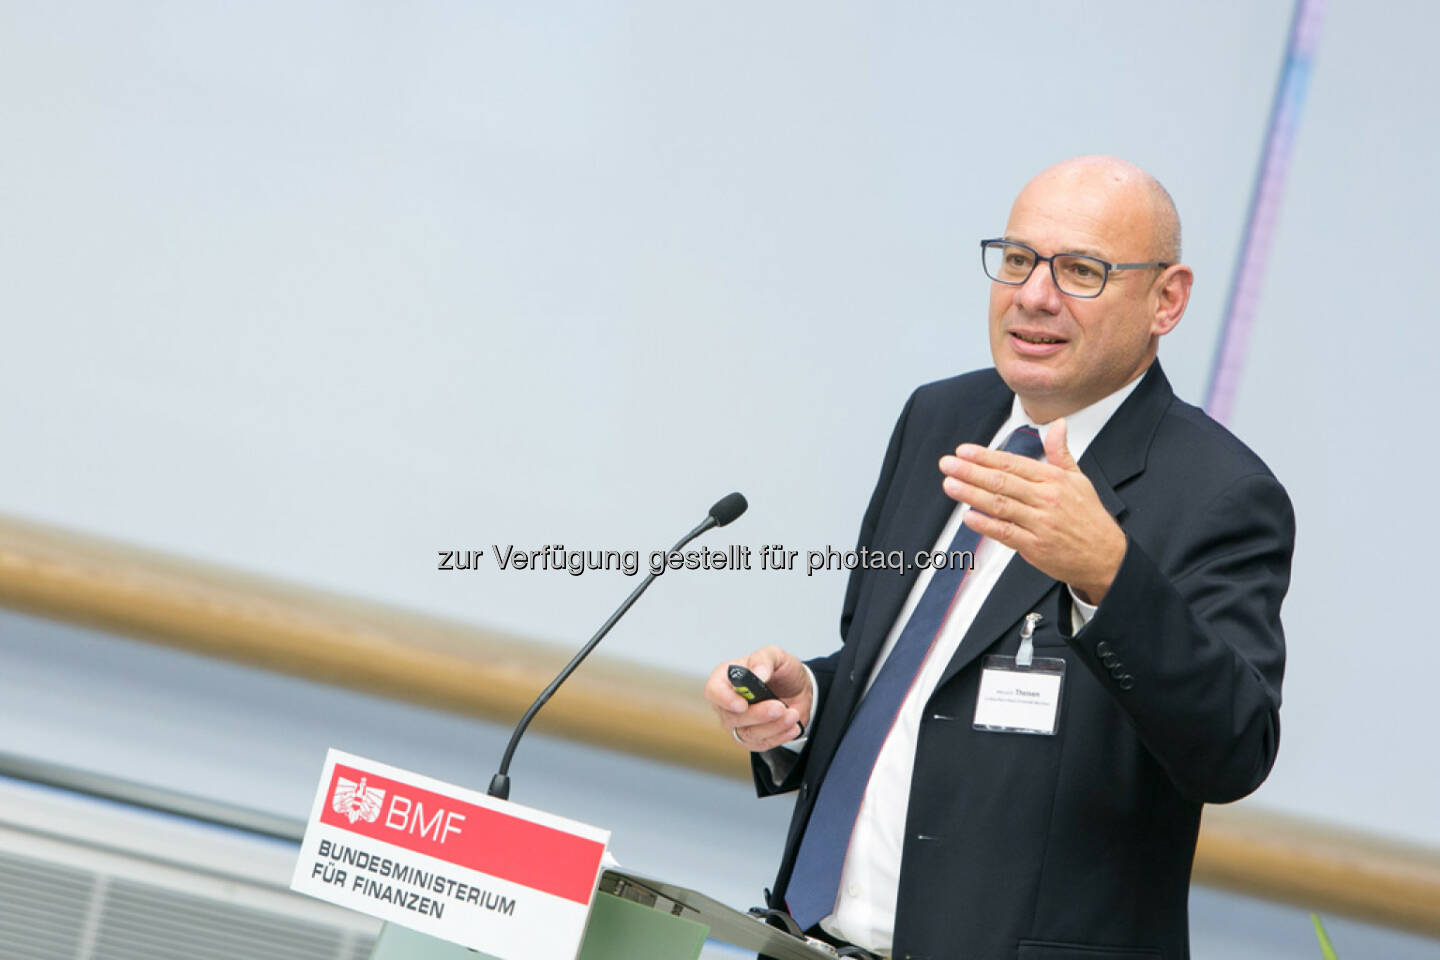 Manuel R. Theisen, Fakultät für Betriebswirtschaft, LMU München